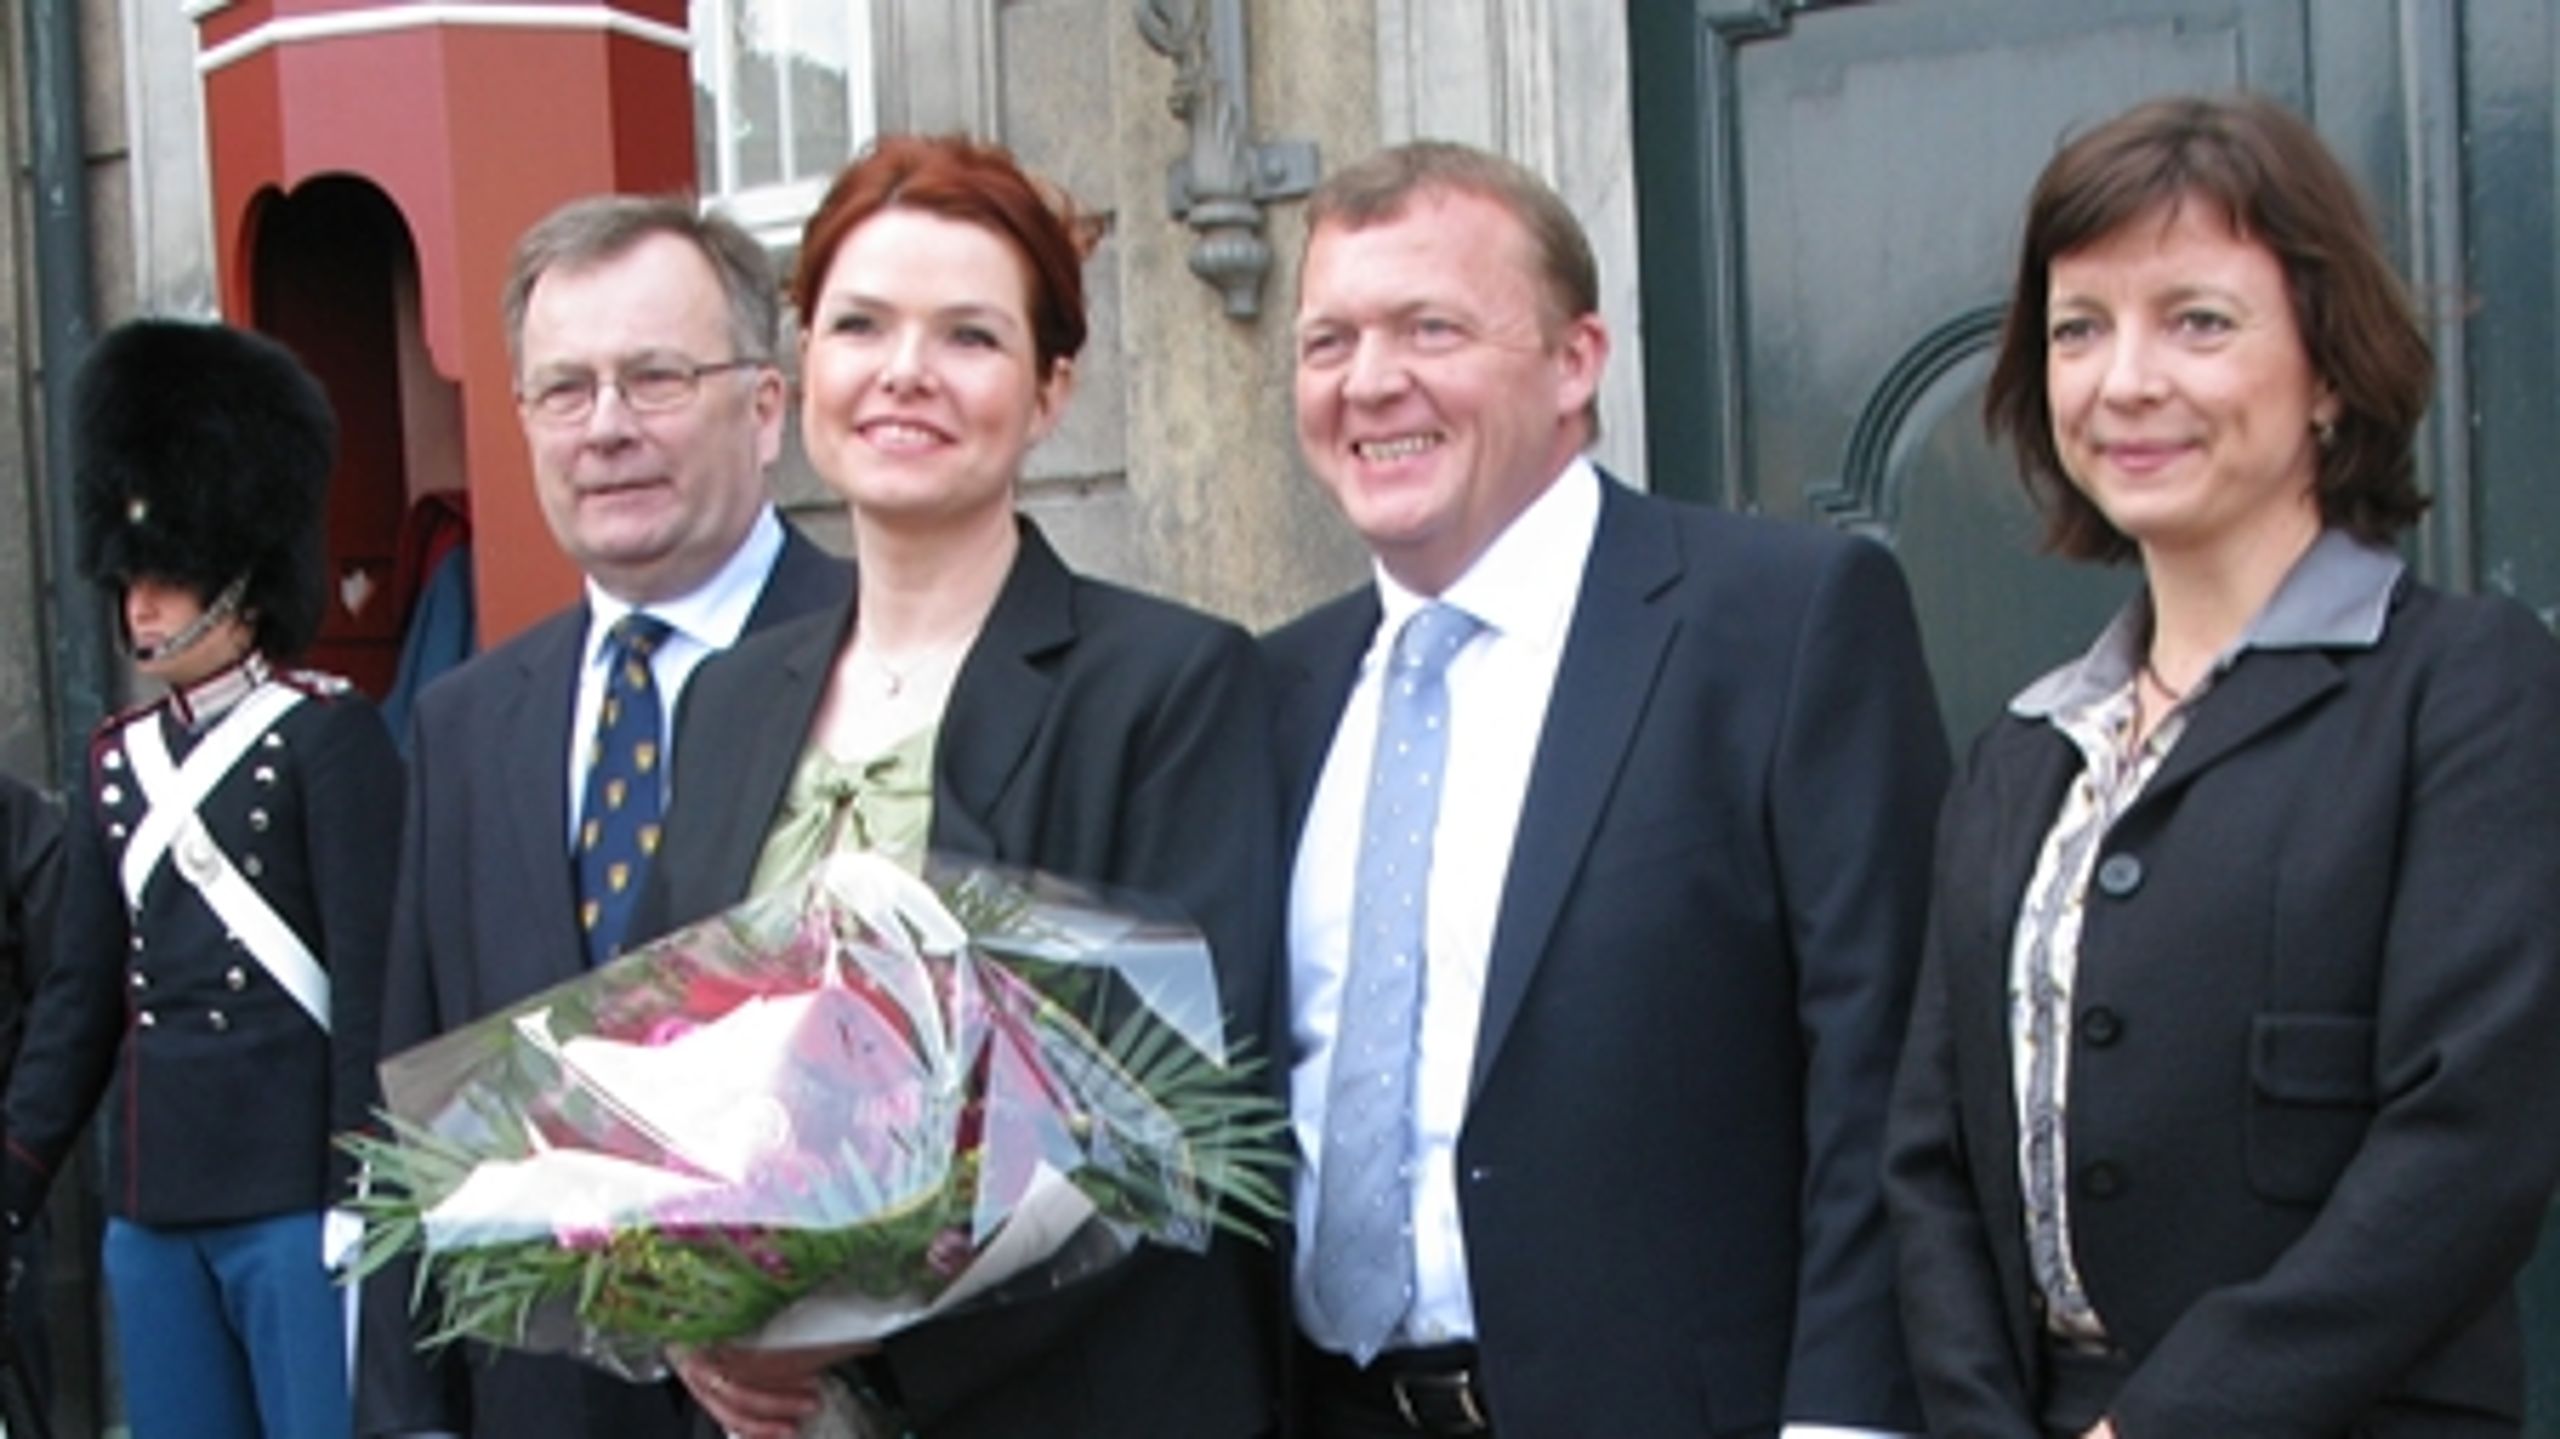 Der var brede smil p&#229; l&#230;berne, da L&#248;kke Rasmussen pr&#230;senterede sit nye ministerhold p&#229; Amalienborg Slotsplads.